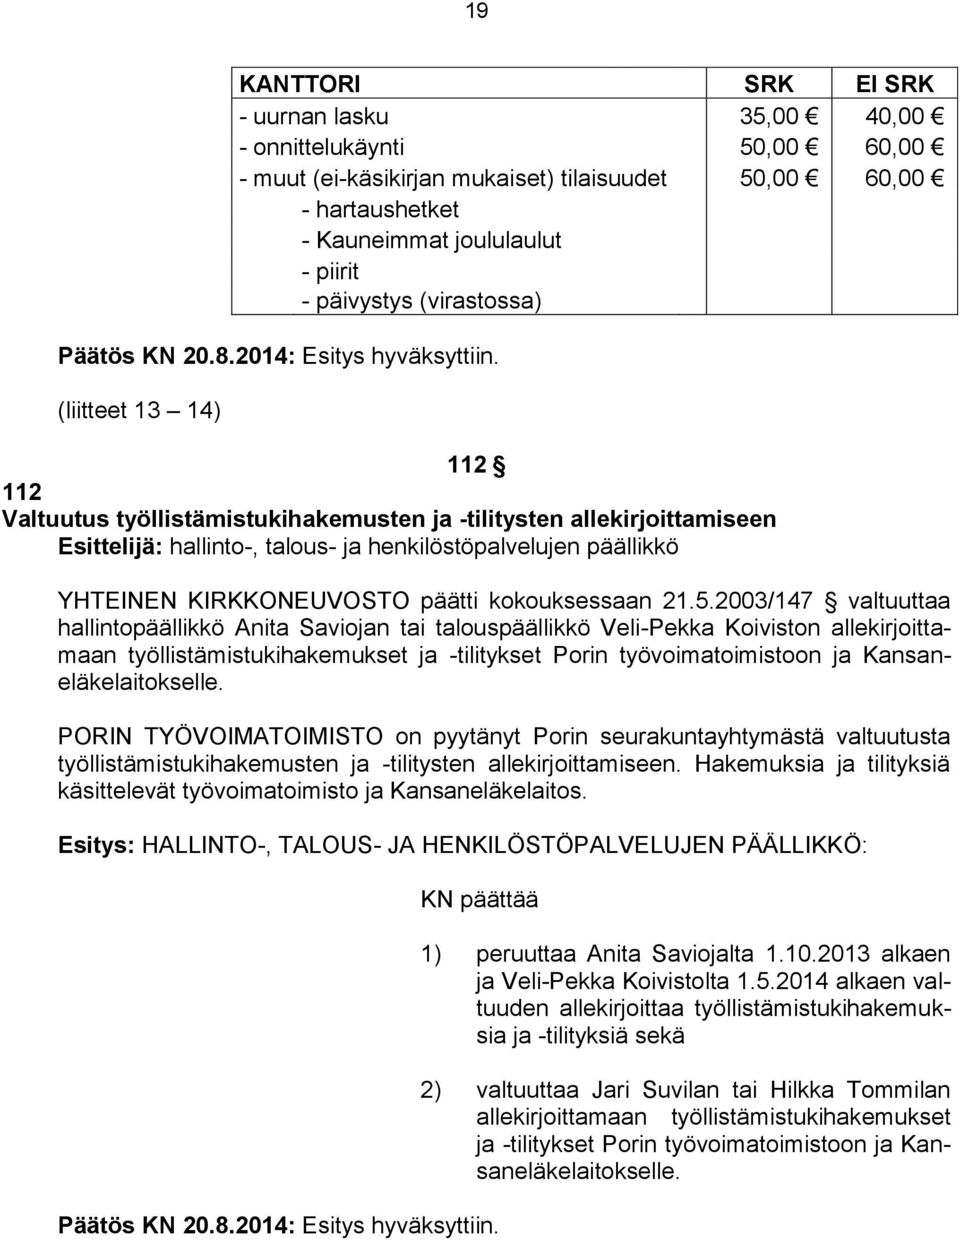 (liitteet 13 14) 112 112 Valtuutus työllistämistukihakemusten ja -tilitysten allekirjoittamiseen Esittelijä: hallinto-, talous- ja henkilöstöpalvelujen päällikkö YHTEINEN KIRKKONEUVOSTO päätti